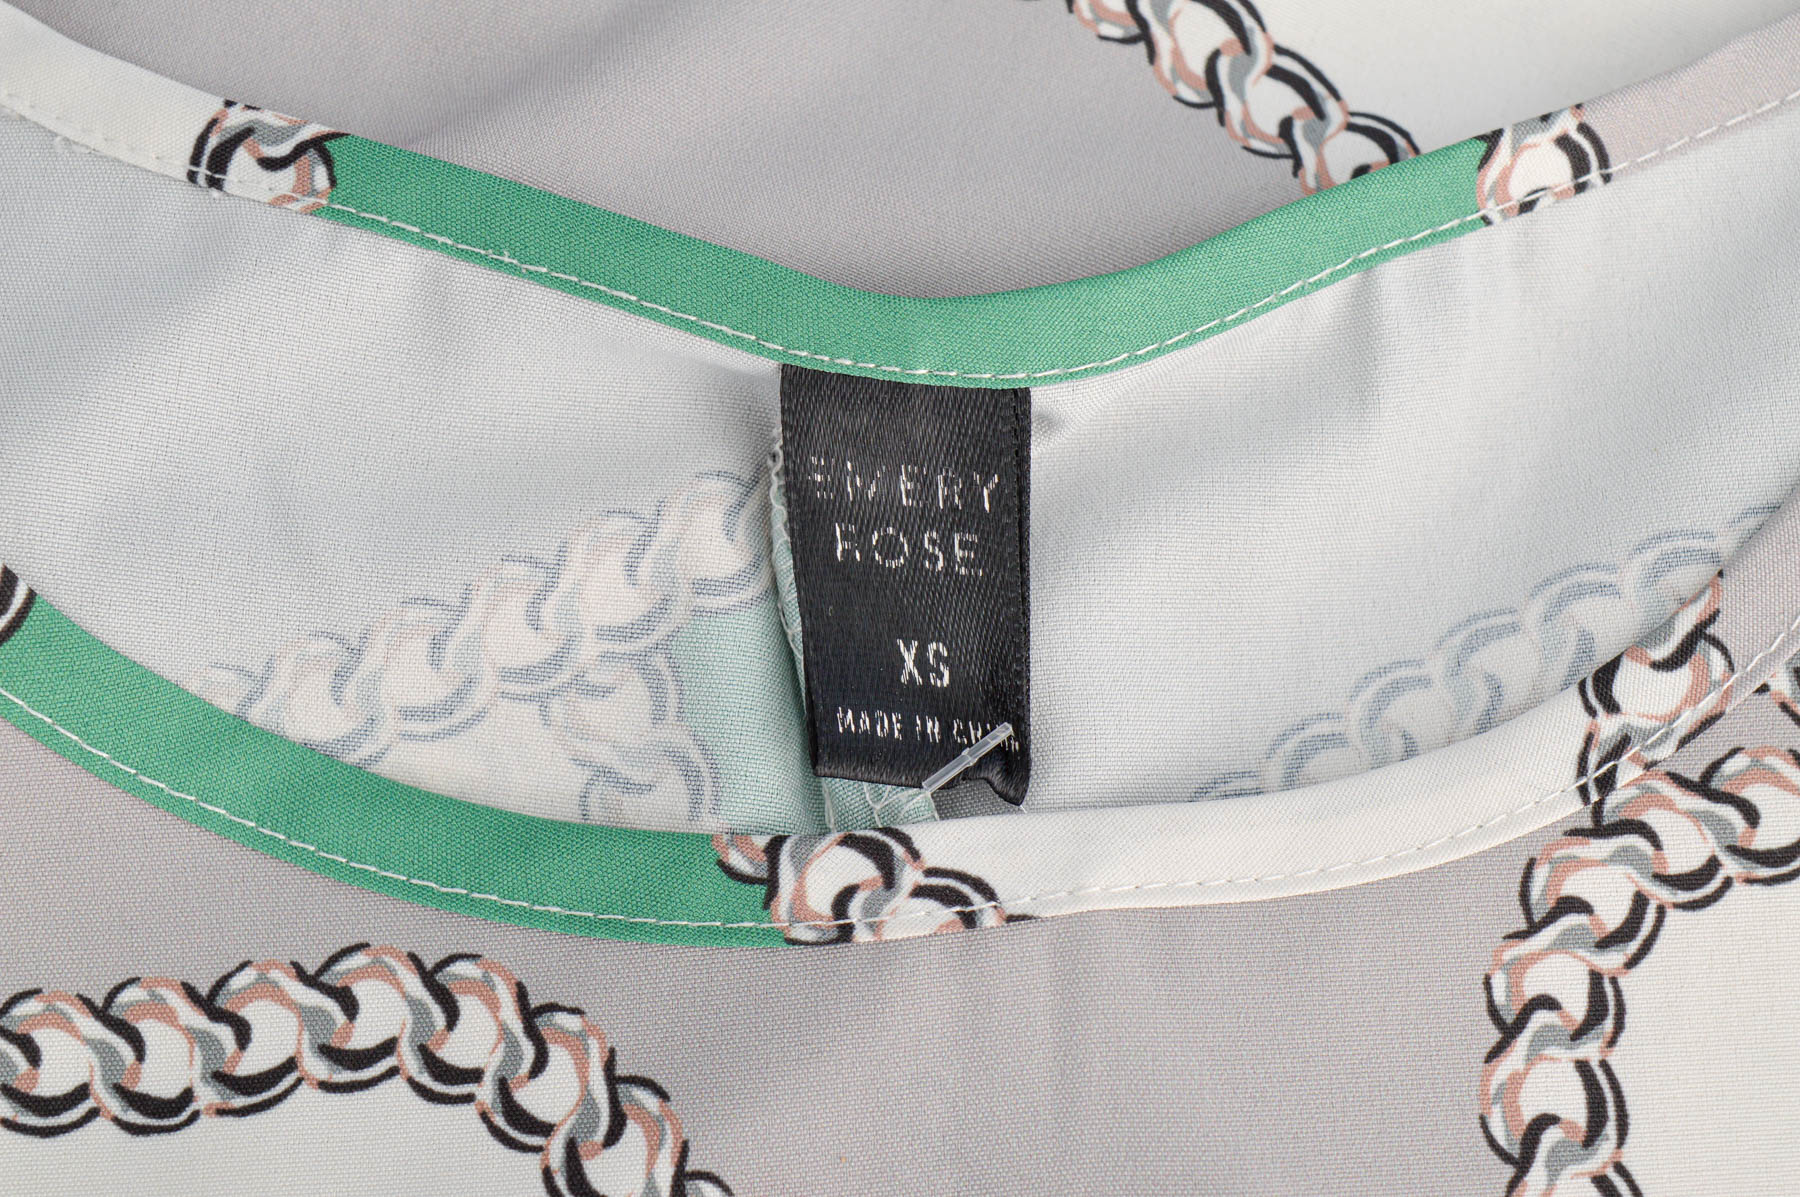 Women's shirt - EMERY ROSE - 2